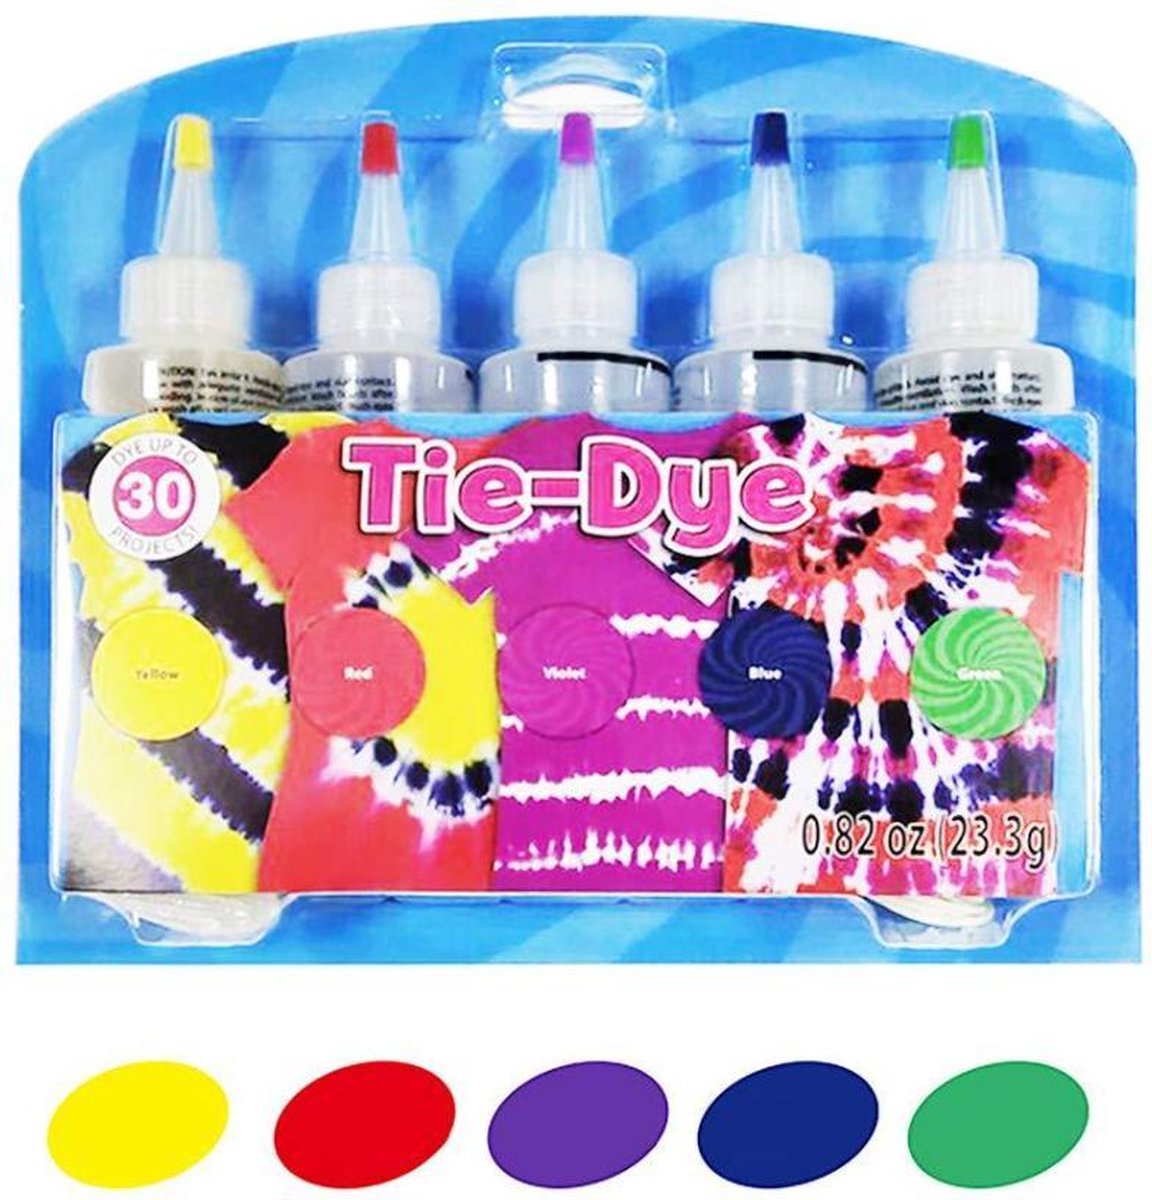 Tie Dye kit - Complete tie dye starterset met 5 kleuren - Geel, rood, paars, blauw & groen